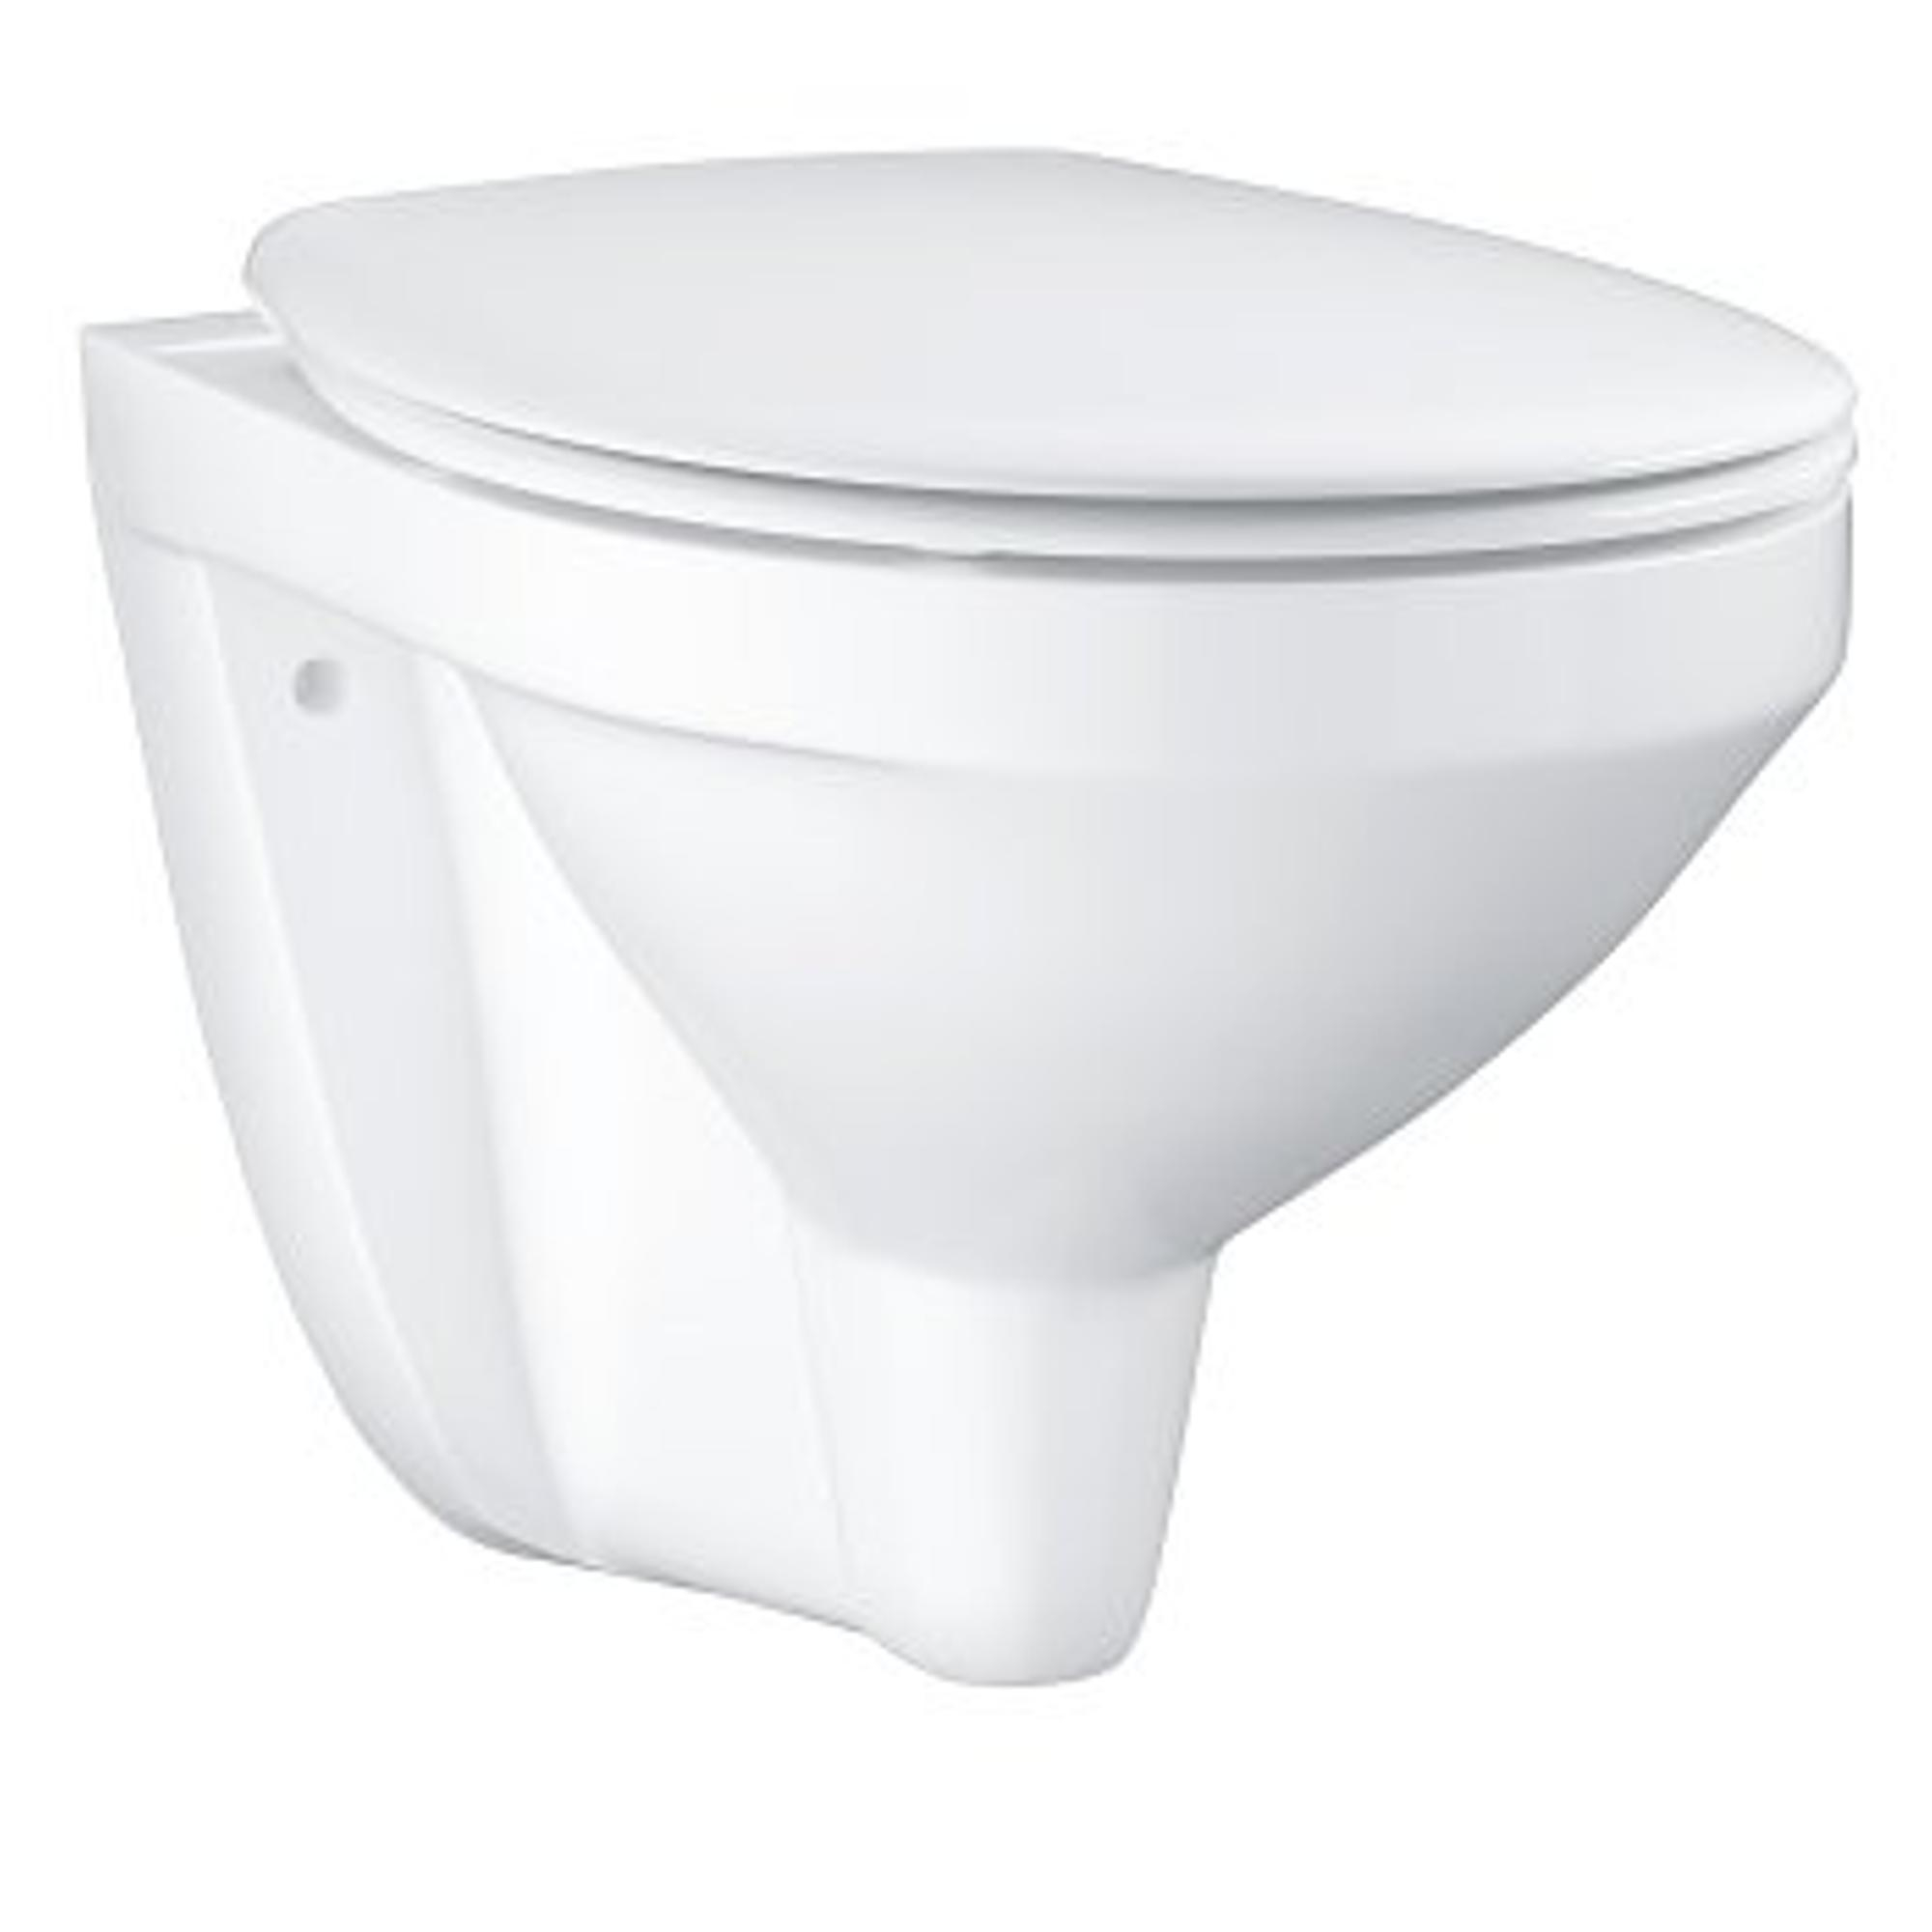 GROHE Bau céramique WC suspendu avec abattant WC blanc - 39497000